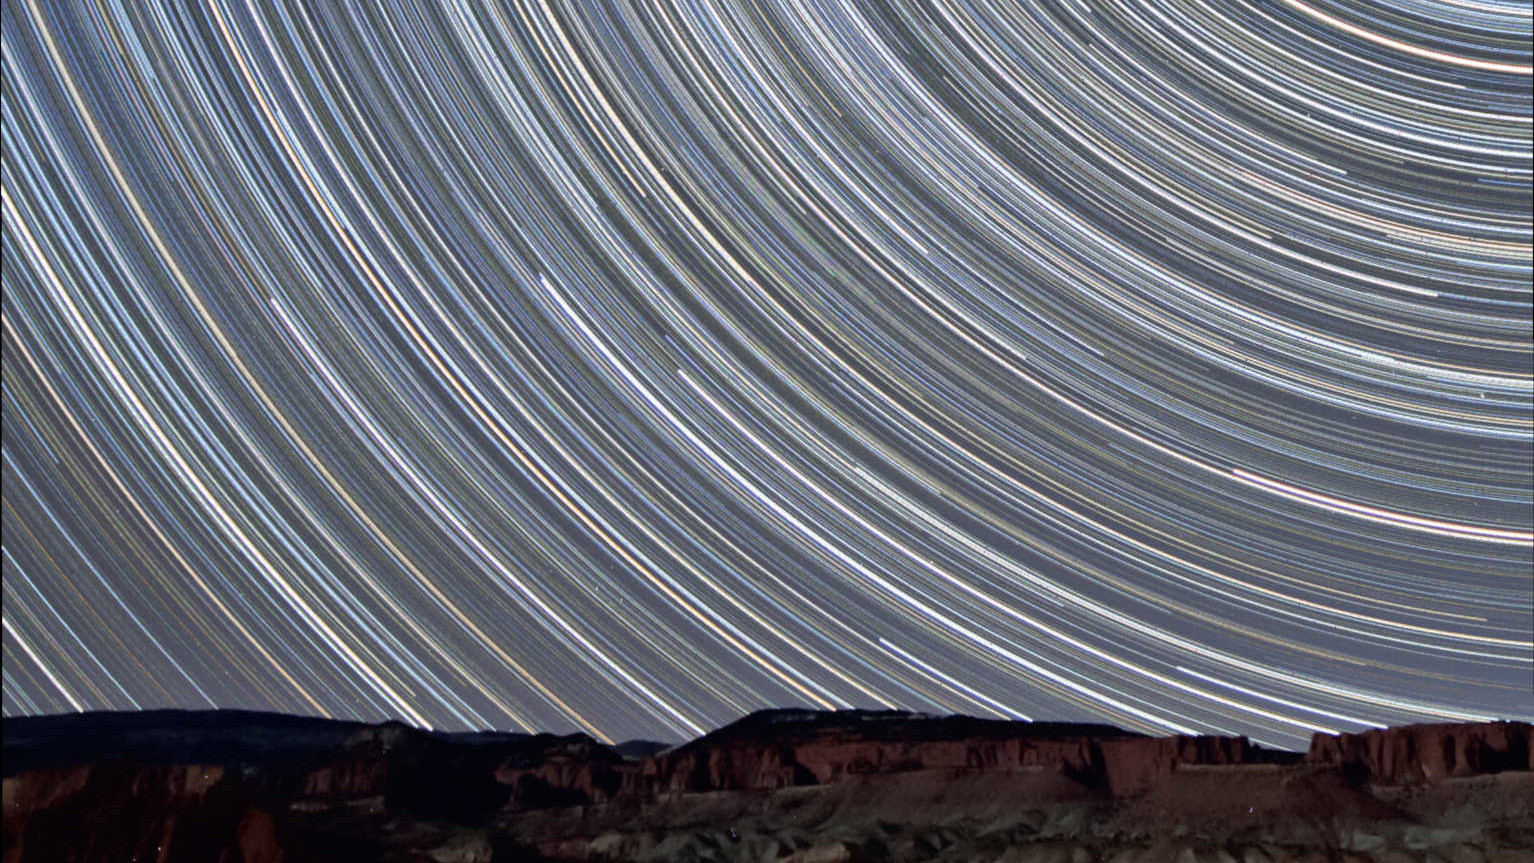 Några få mil från Capitol Reef Nationalpark i Utah (USA) togs dessa stjärnspårsbilder med utsikt mot norr. De visar stjärnornas förflyttning över de av den tilltagande månen upplysta röda sandstensklipporna. I denna summerade bild kombineras 350 exponeringar med en varaktighet av 90 sekunder vardera (total exponeringstid: 525 minuter = 8,75 timmar). Bilden togs med ett 10–20 mm objektiv (vid 10 mm och f/4) på en Canon DSLR av modell 450D. U. Dittler